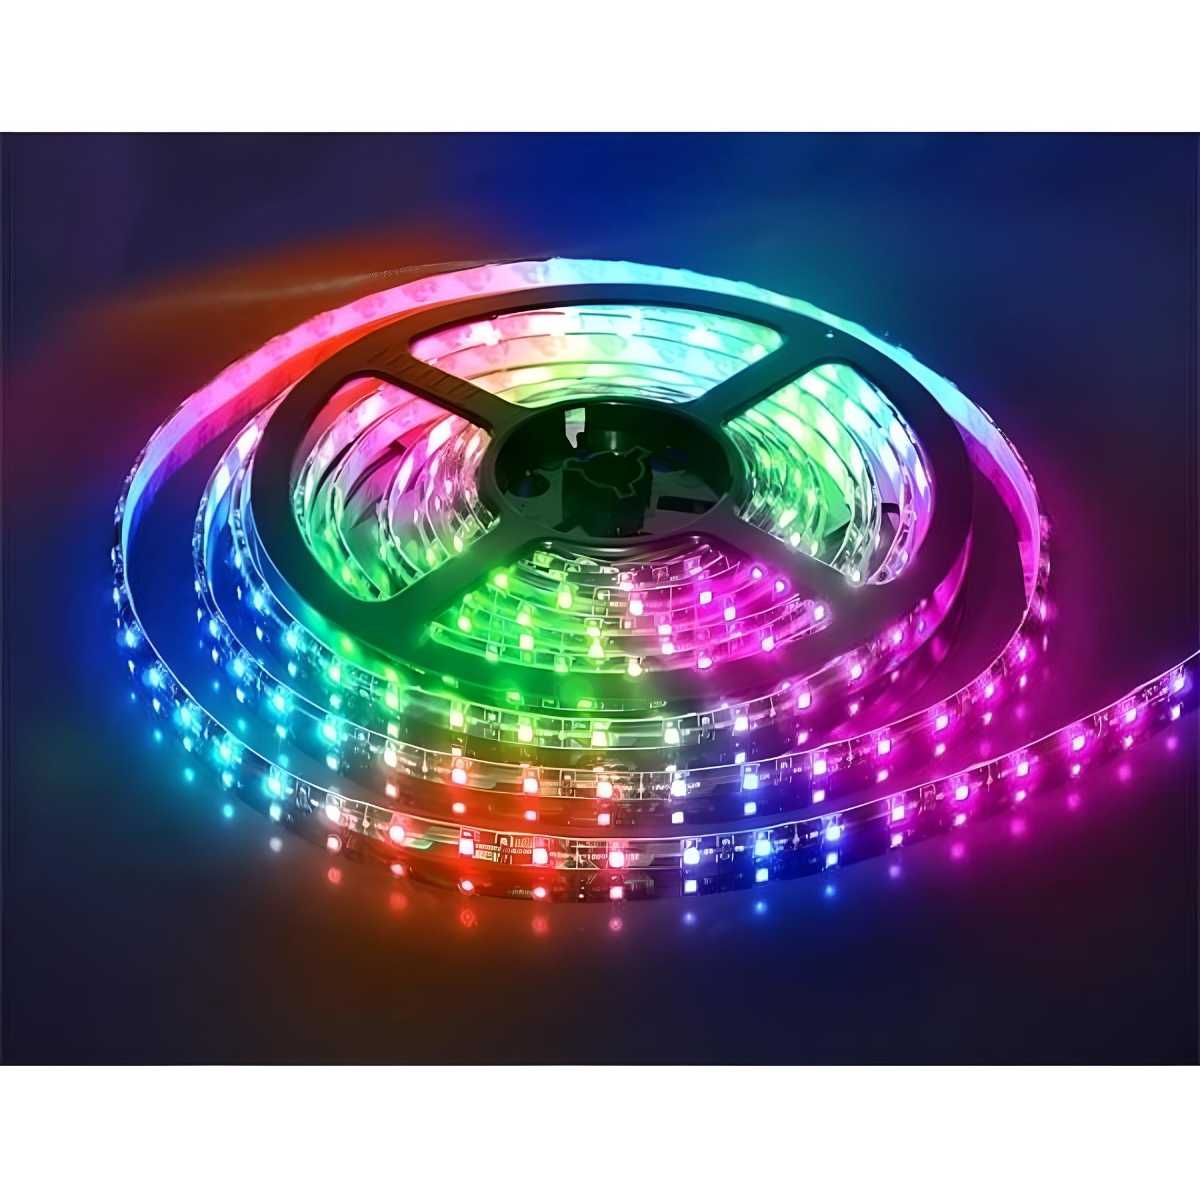 Світлодіодна стрічка багатобарвна RGB 5м Led з пультом